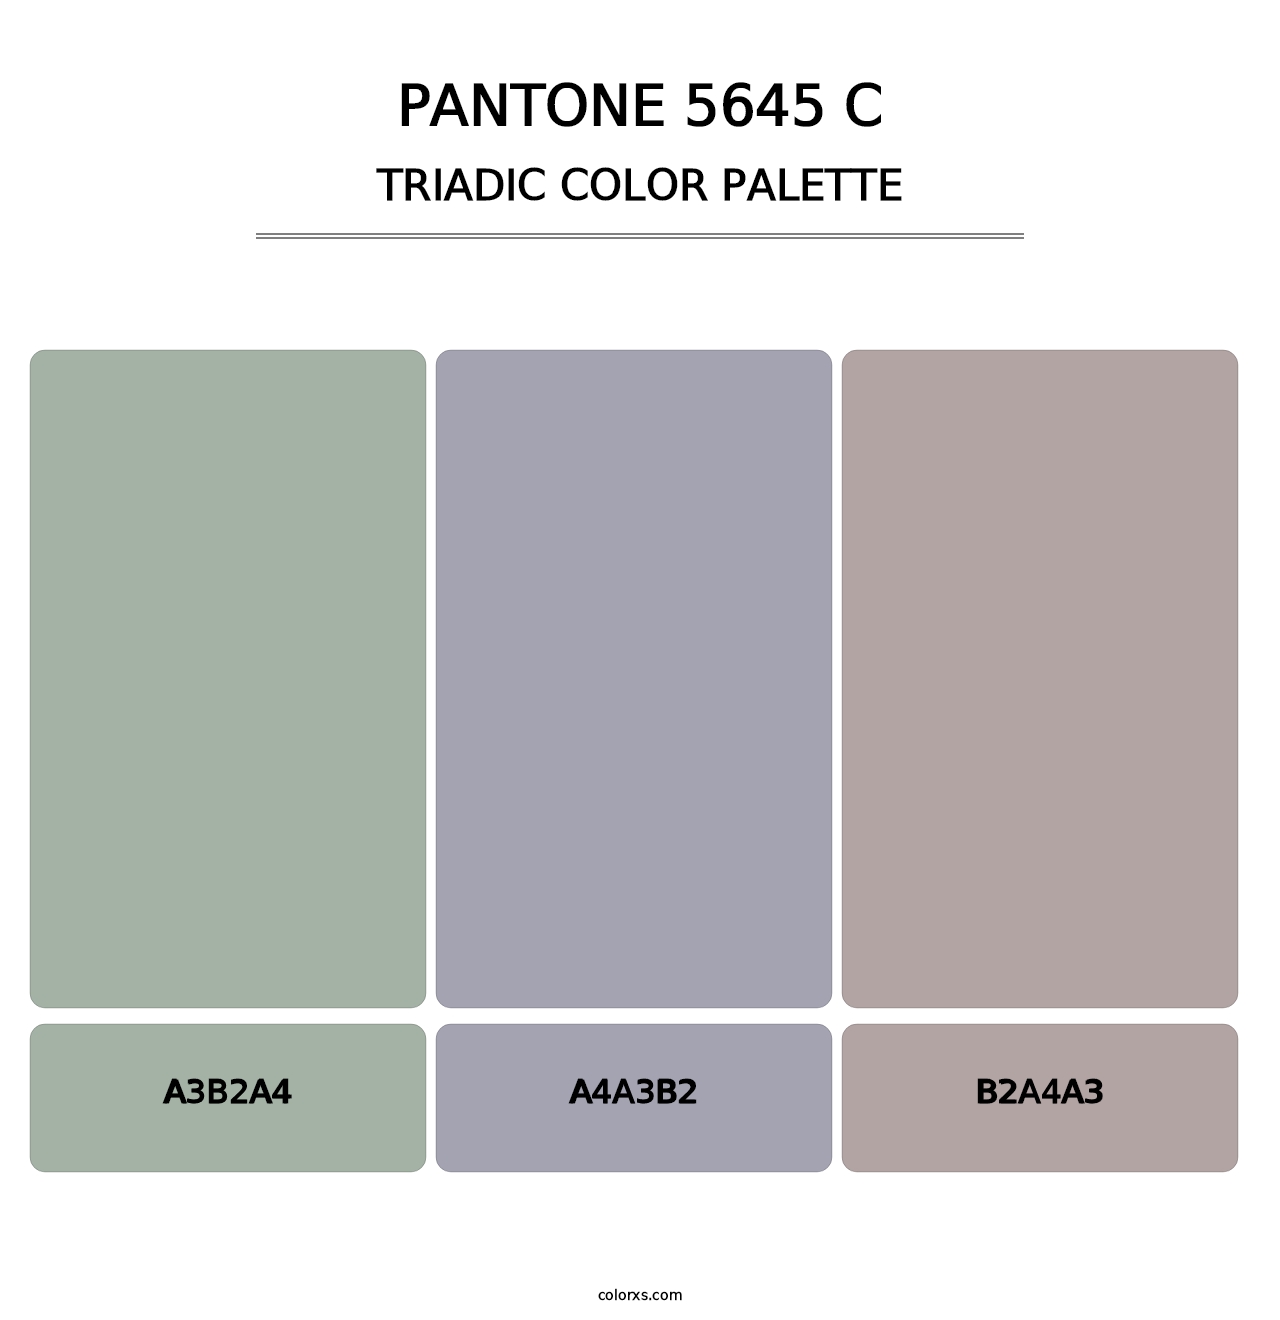 PANTONE 5645 C - Triadic Color Palette